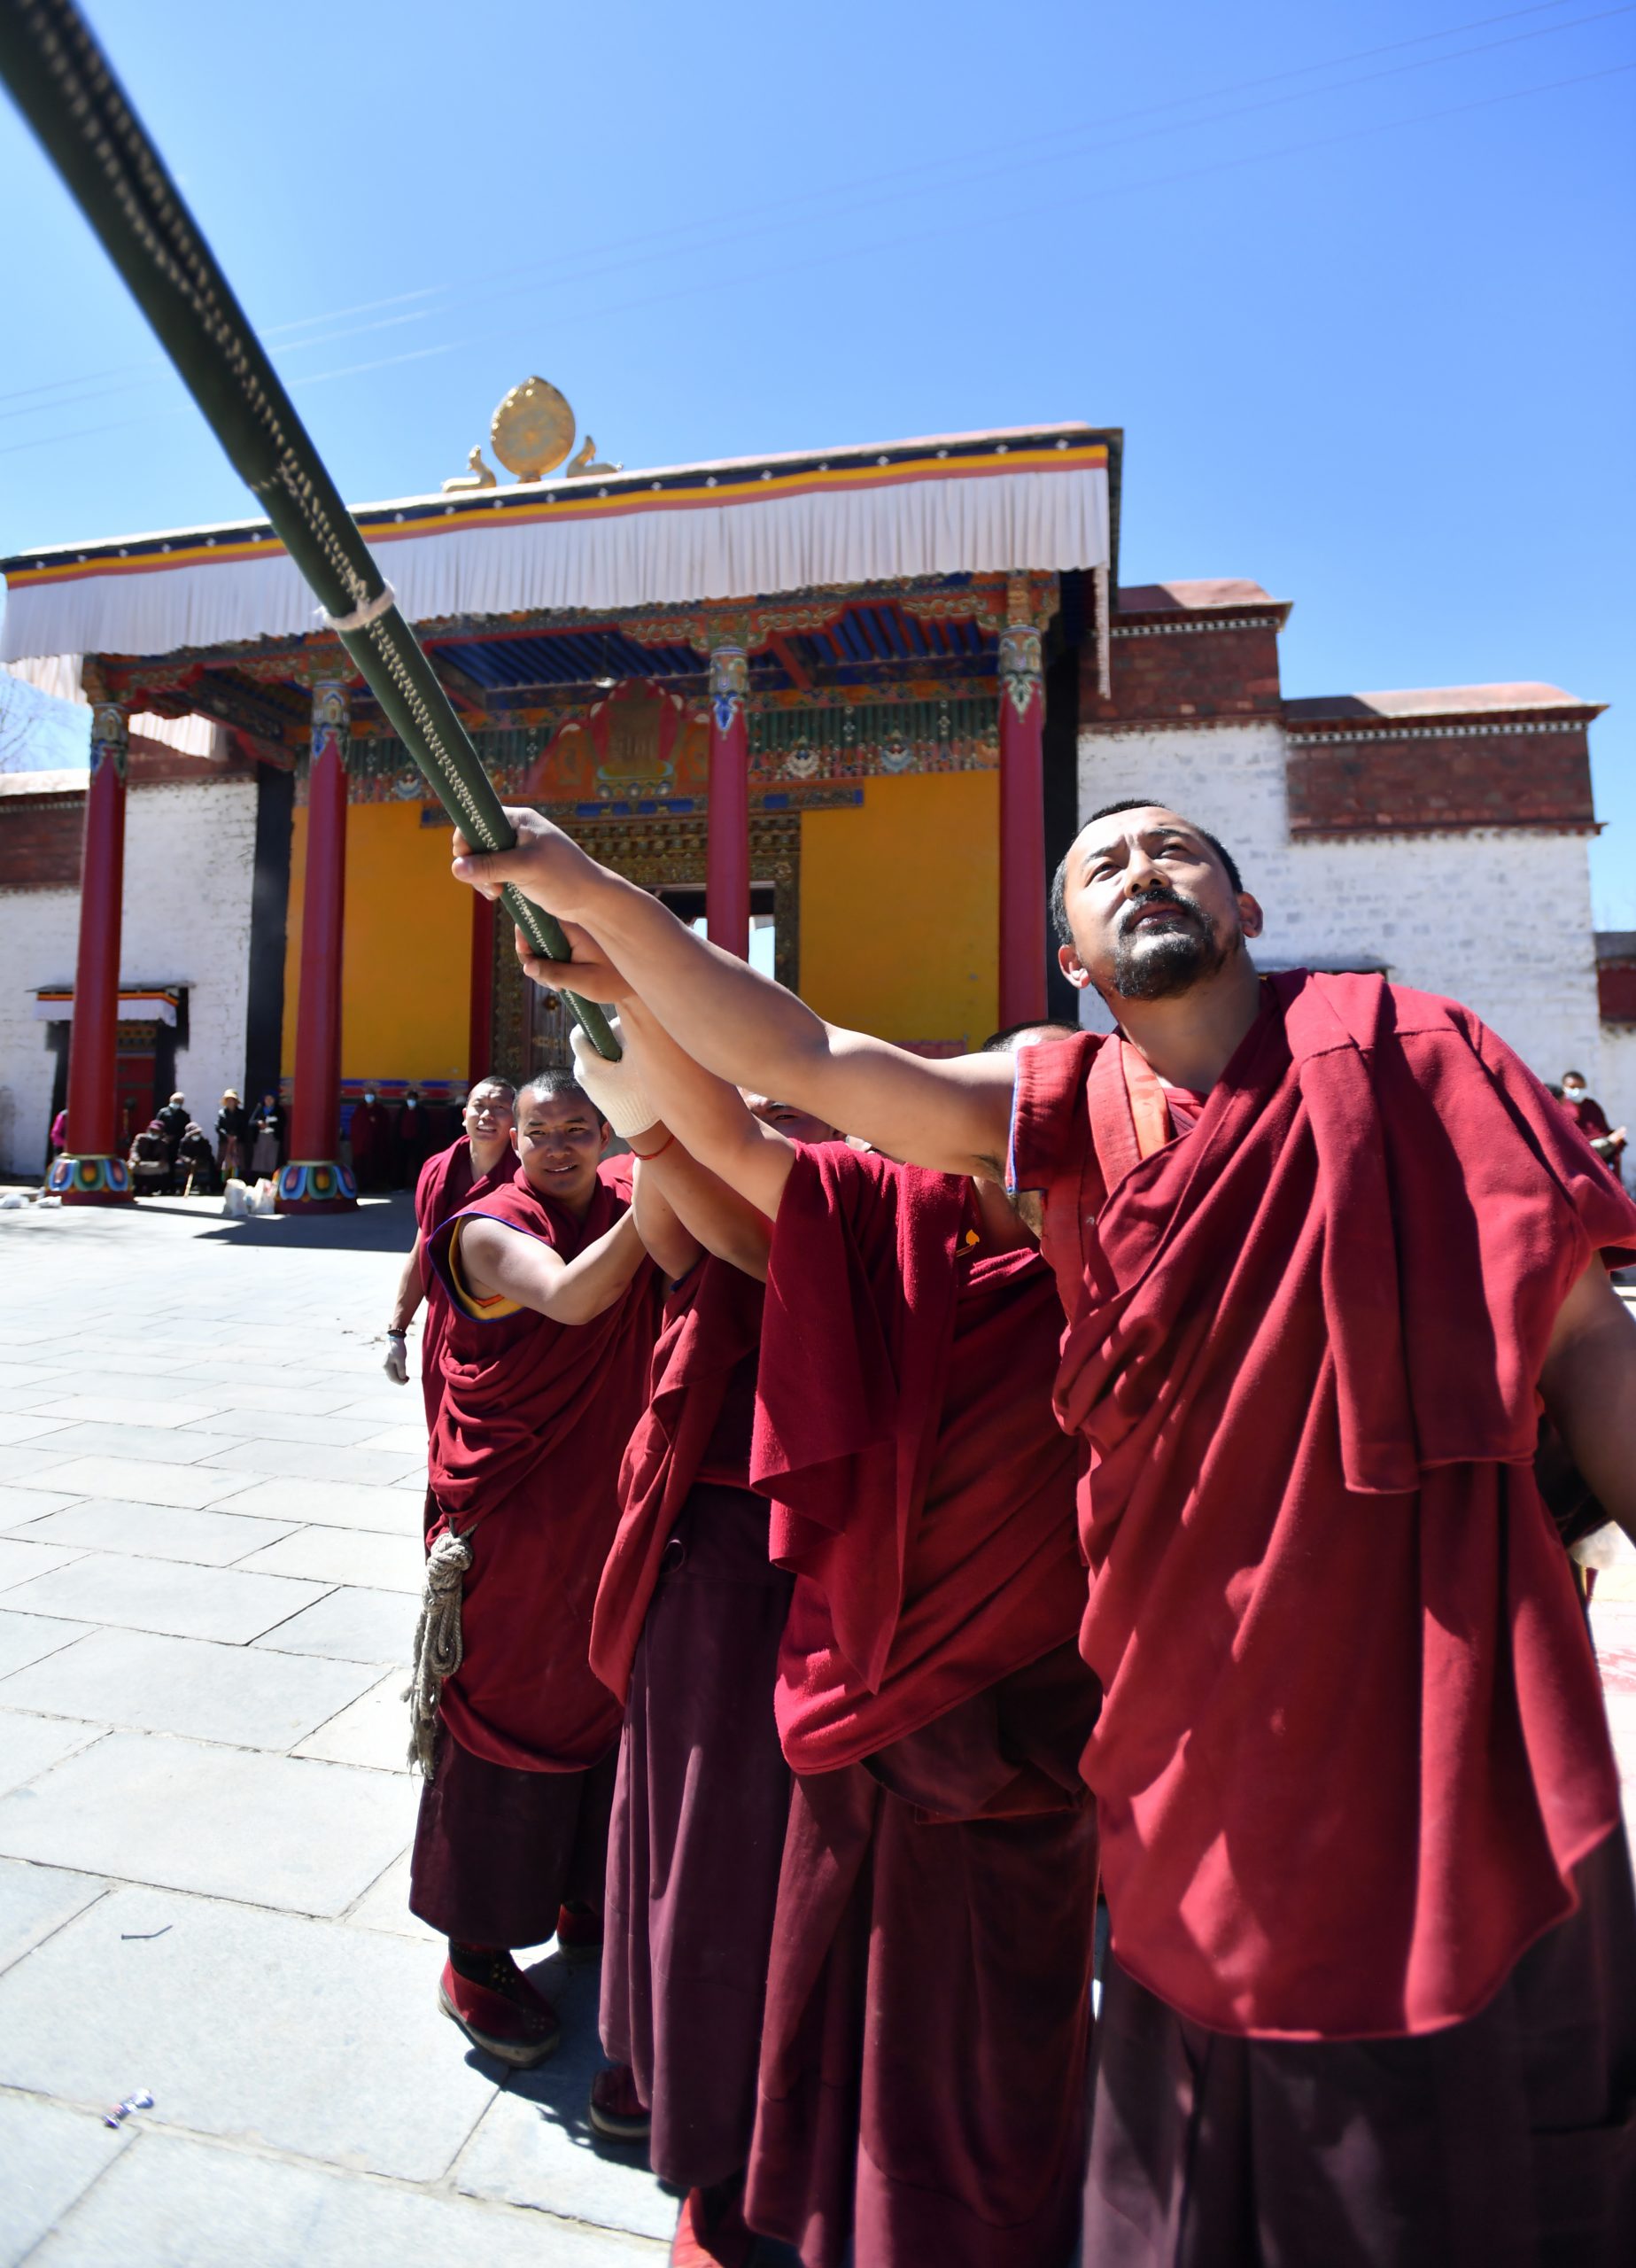     西藏扎什伦布寺立经杆 祈愿经幡满满祝福语